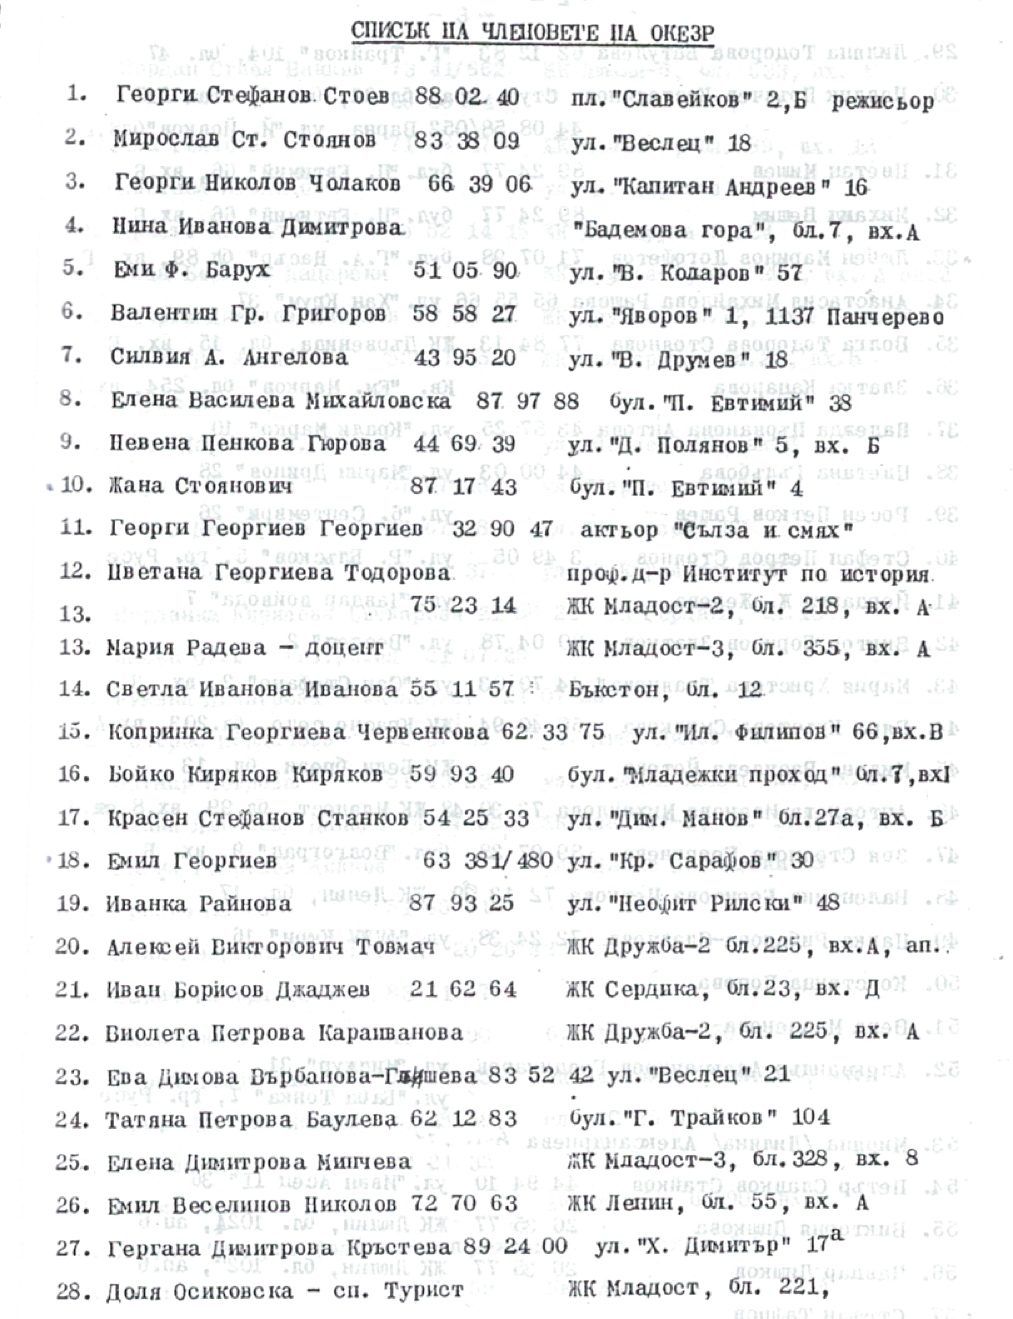 Списък на членовете на Русенския комитет